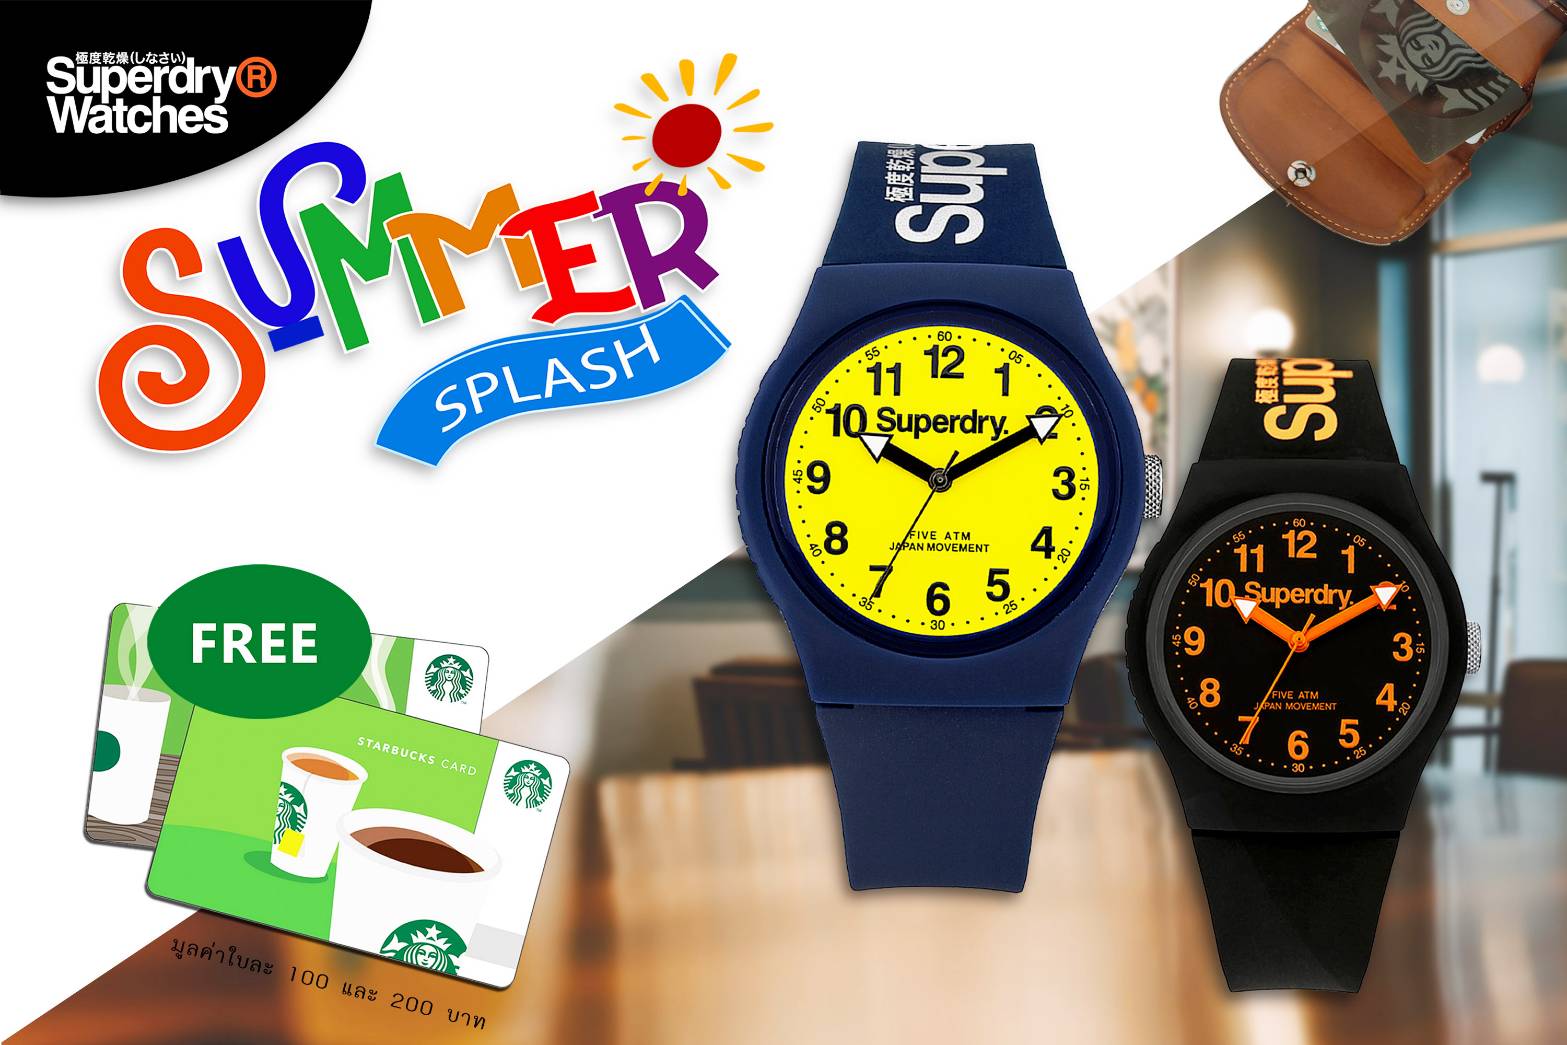 นาฬิกาซุปเปอร์ดรายจัดแคมเปญ SUMMER SPLASH ซุปเปอร์ดราย (Superdry) นาฬิกาแบรนด์สุดฮิตจากประเทศอังกฤษ แนะนำแคมเปญต้อนรับหน้าร้อนกับ “SUMMER SPLASH”